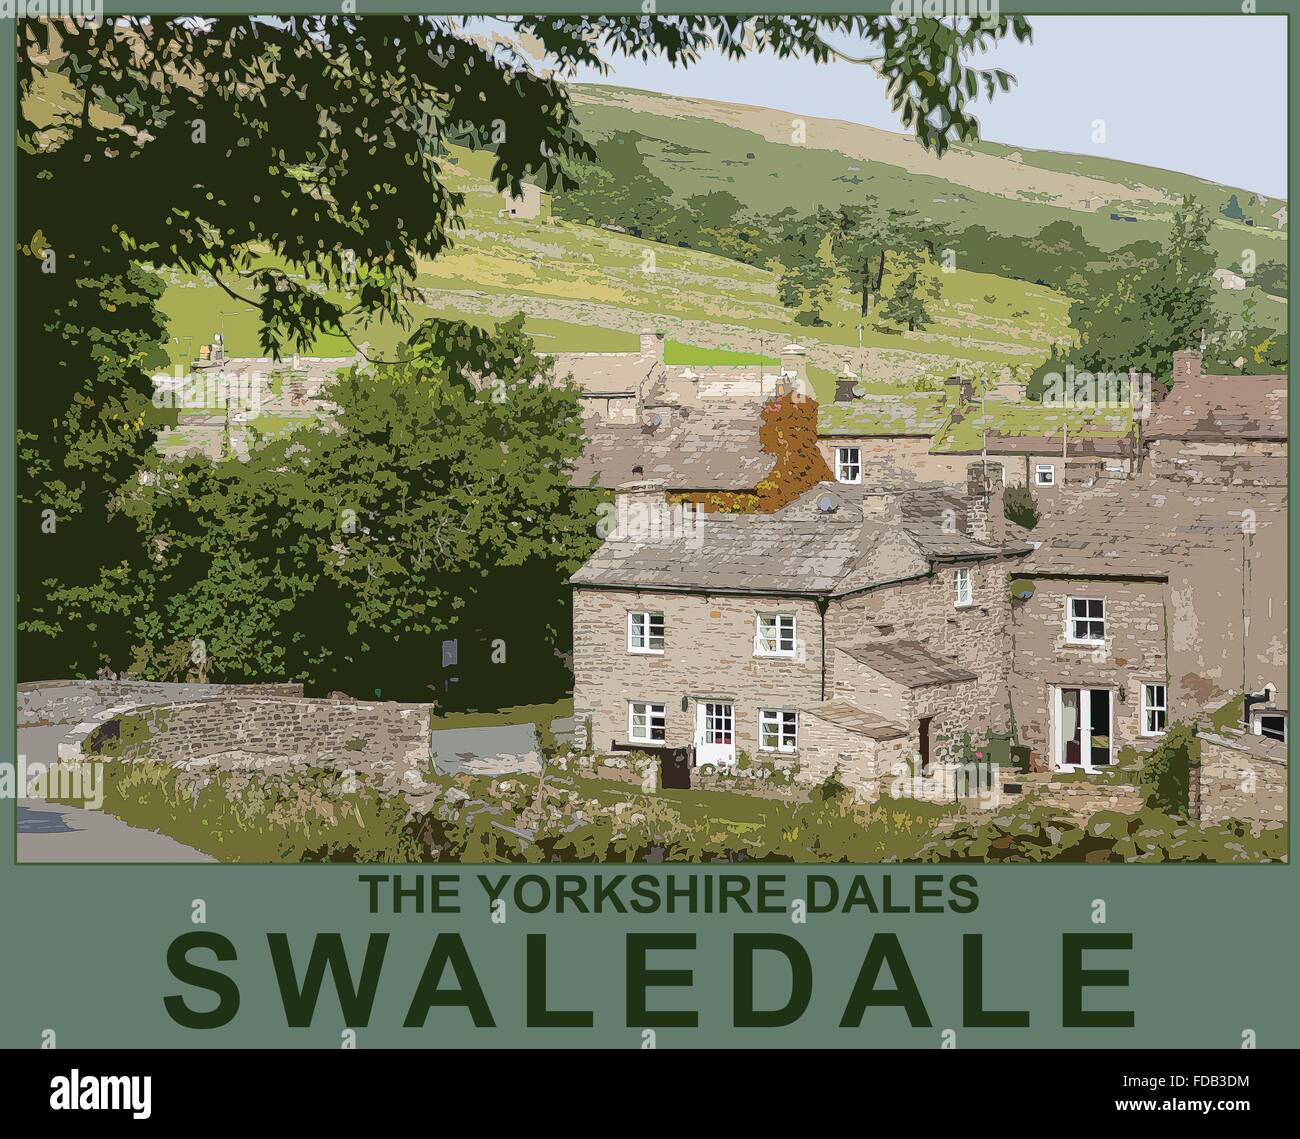 Un poster in stile illustrazione da una fotografia del villaggio di Thwaite, Yorkshire Dales National Park, nello Yorkshire, Inghilterra, Regno Unito Foto Stock